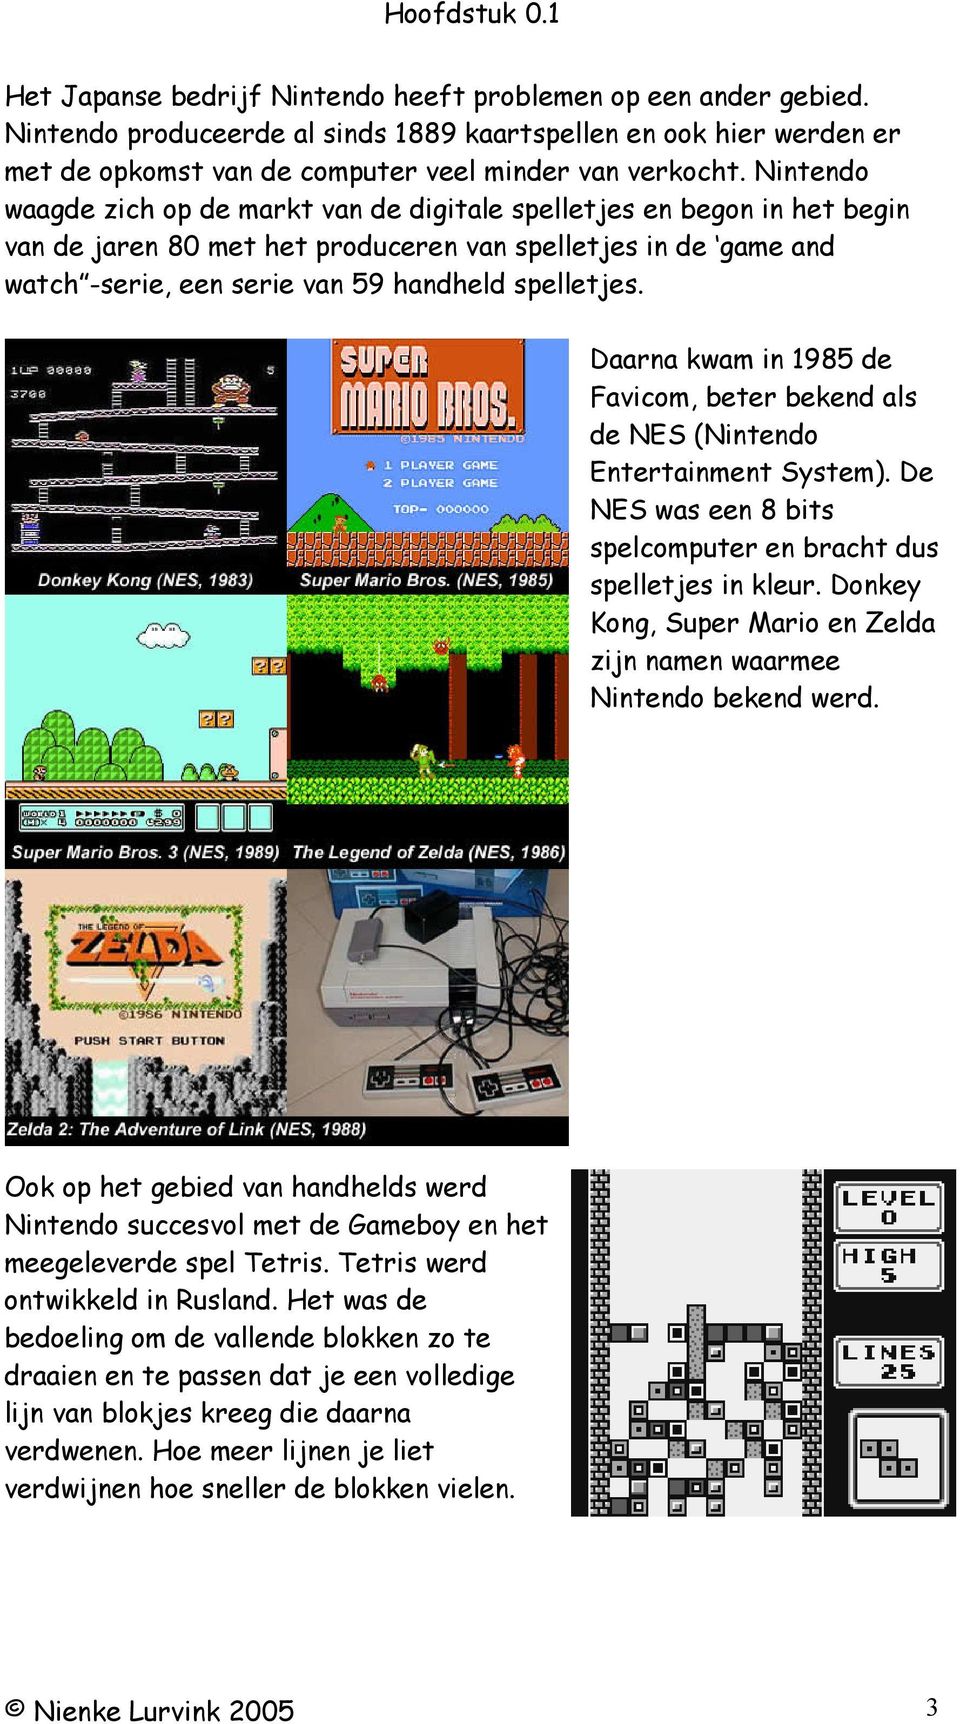 Daarna kwam in 1985 de Favicom, beter bekend als de NES (Nintendo Entertainment System). De NES was een 8 bits spelcomputer en bracht dus spelletjes in kleur.